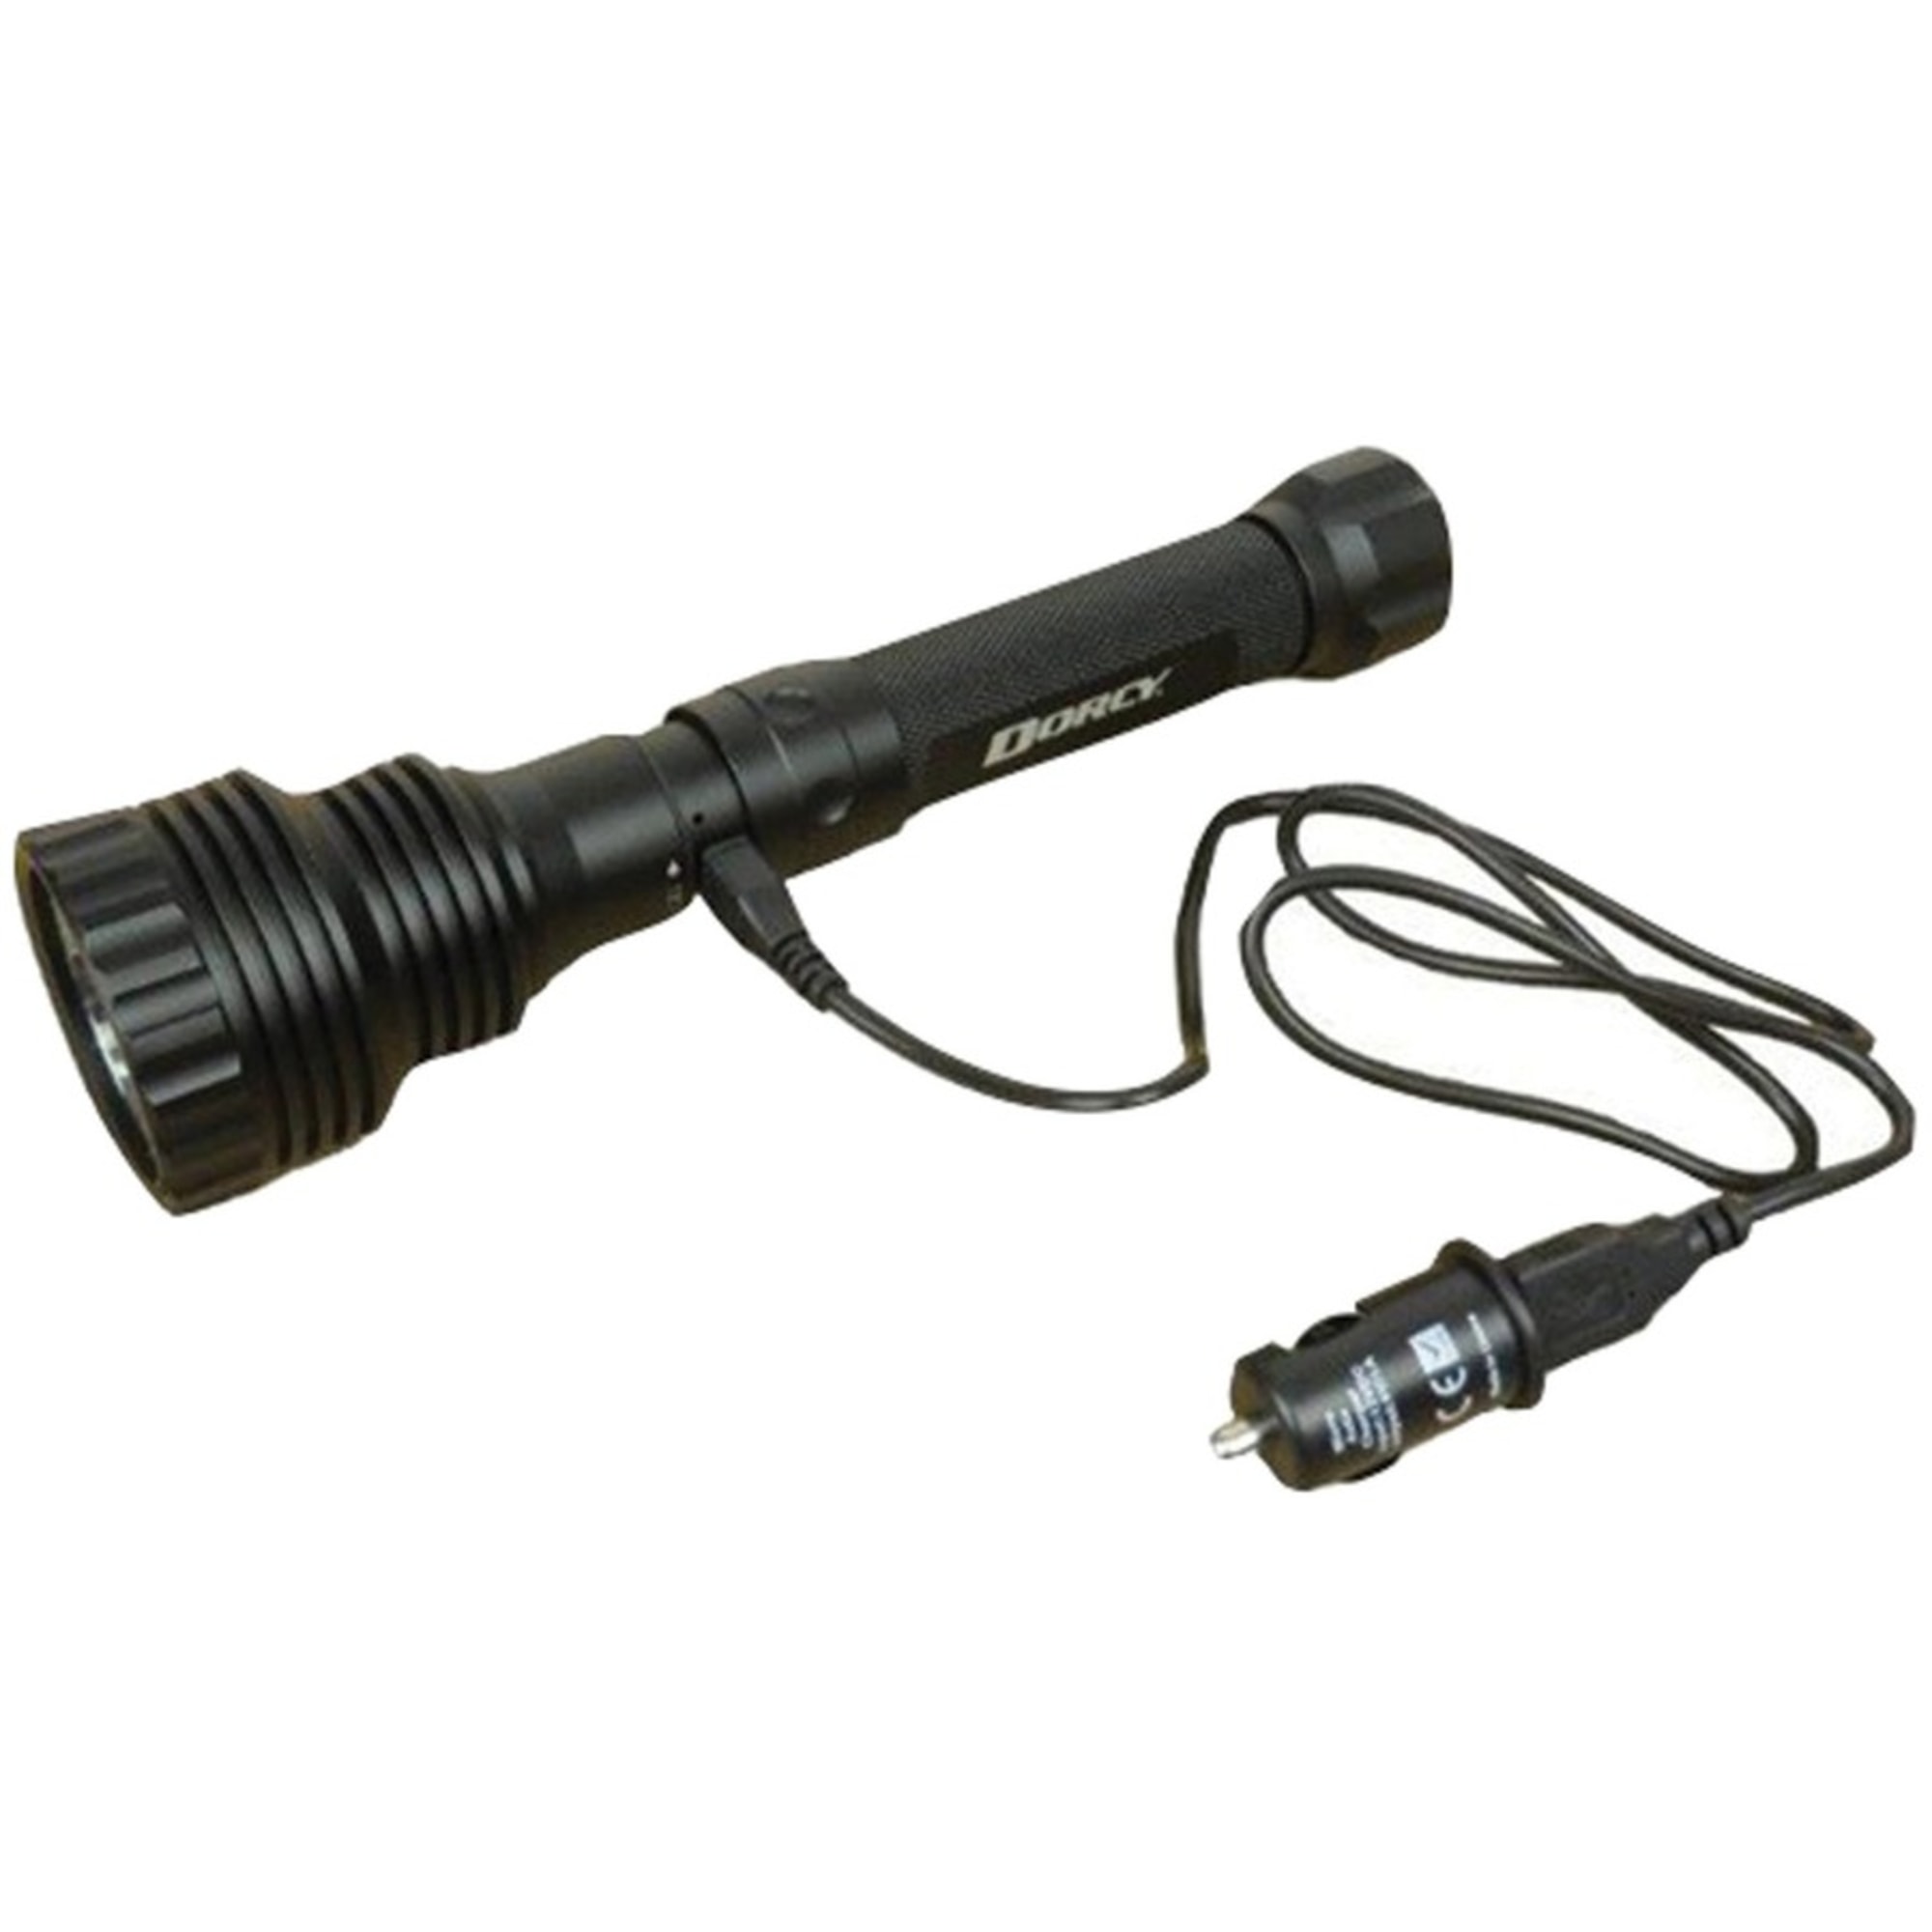 Dorcy LED 1600 Lumen Flashlight and Powerbank - image 4 of 7